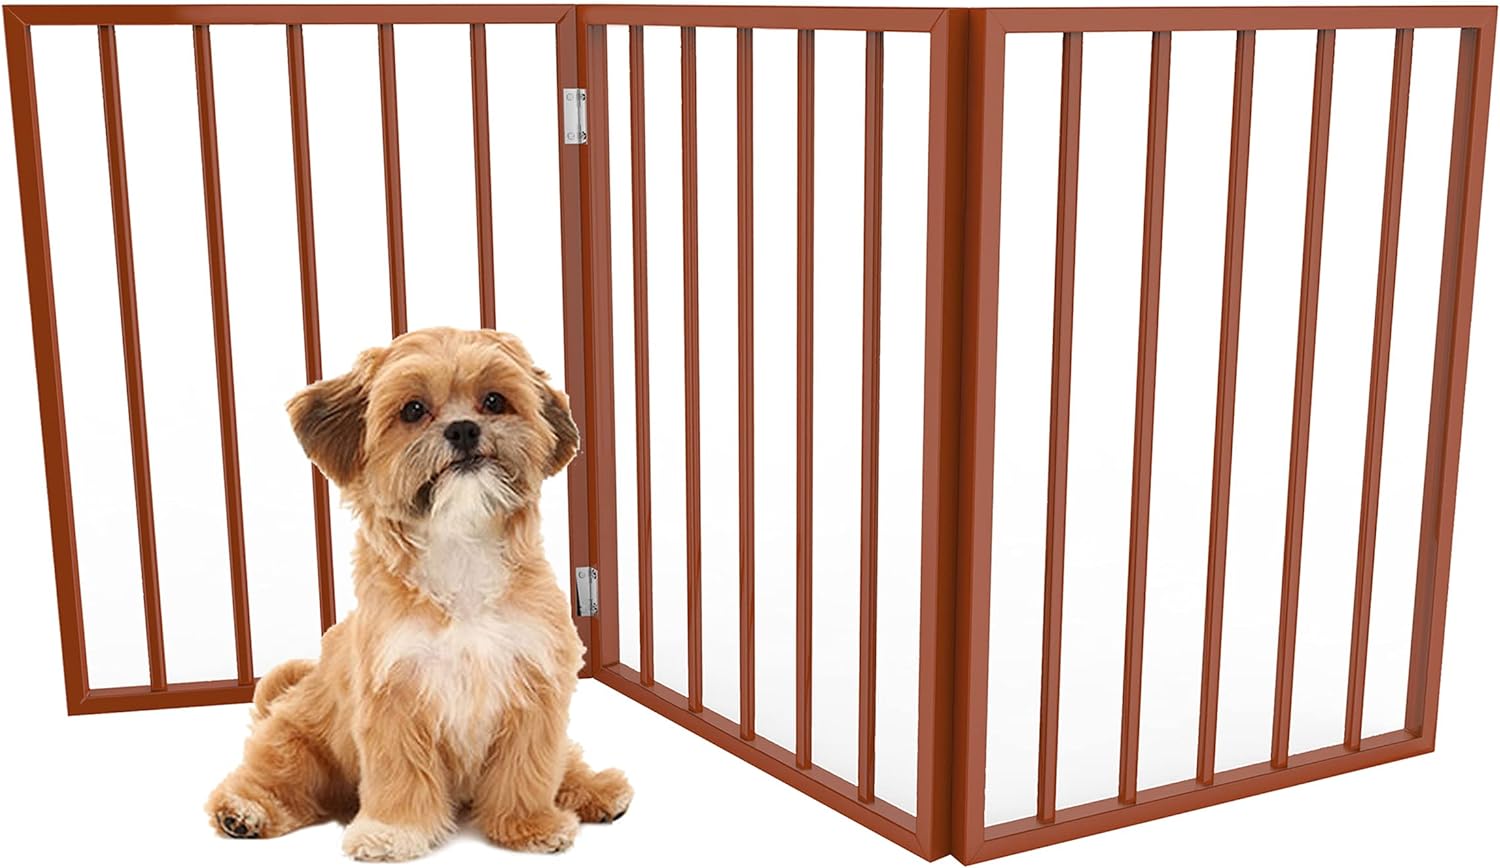  PETMAKER Pet Gate - Puerta para perros para puertas, escaleras  o casa - Independiente, plegable, estilo acordeón, valla de madera para  perros de interior (54x32, blanco) : Todo lo demás